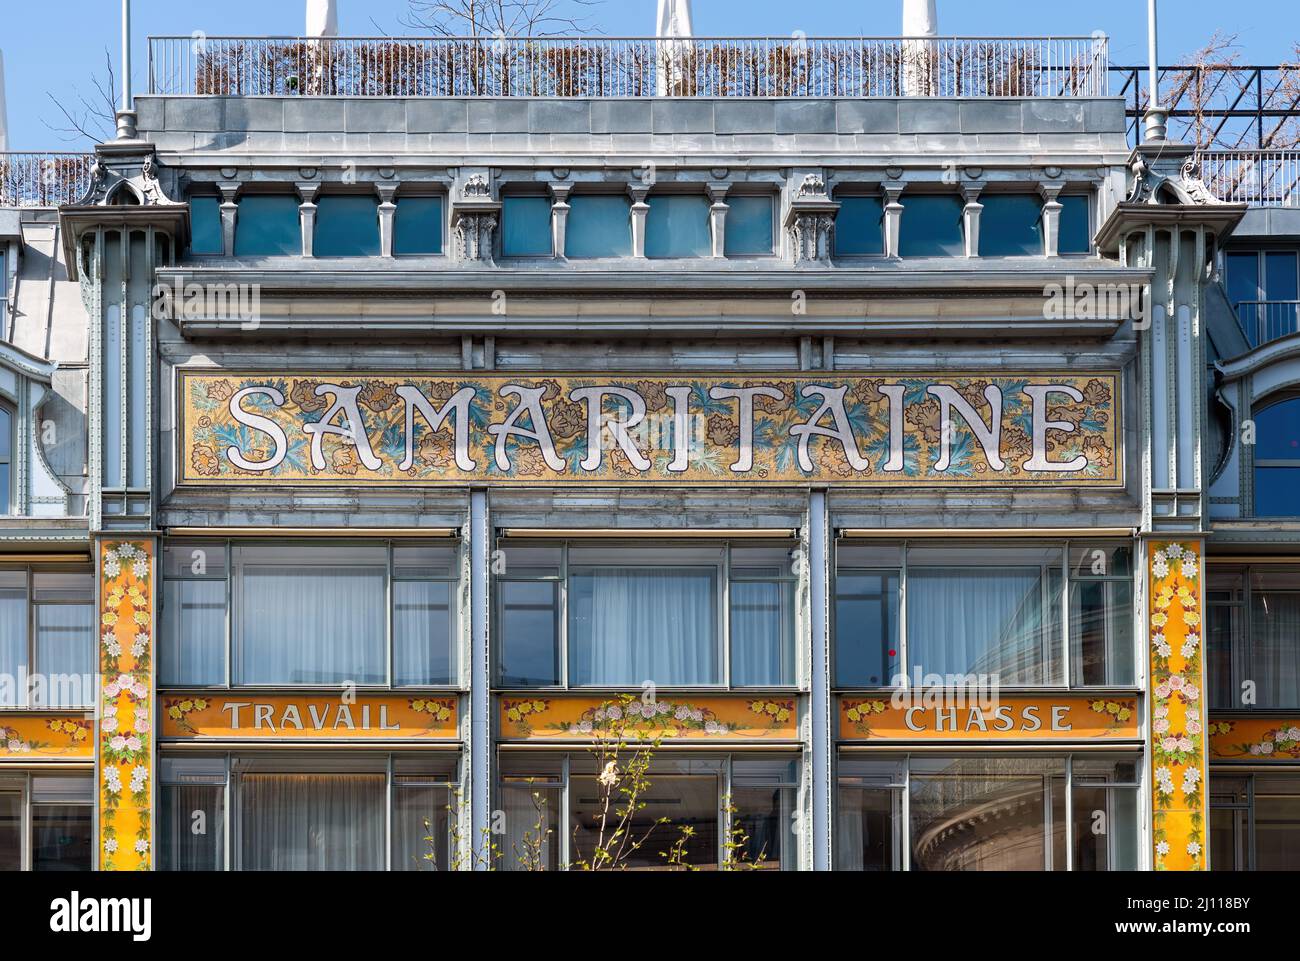 La Samaritaine department store sign - Paris, France Stock Photo